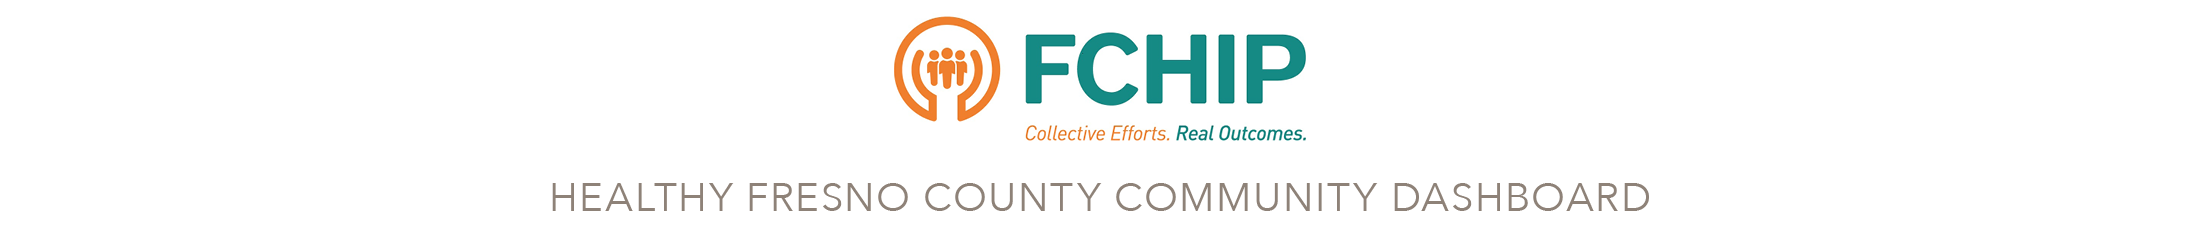 FCHIP Healthy Fresno County Community Dashboard